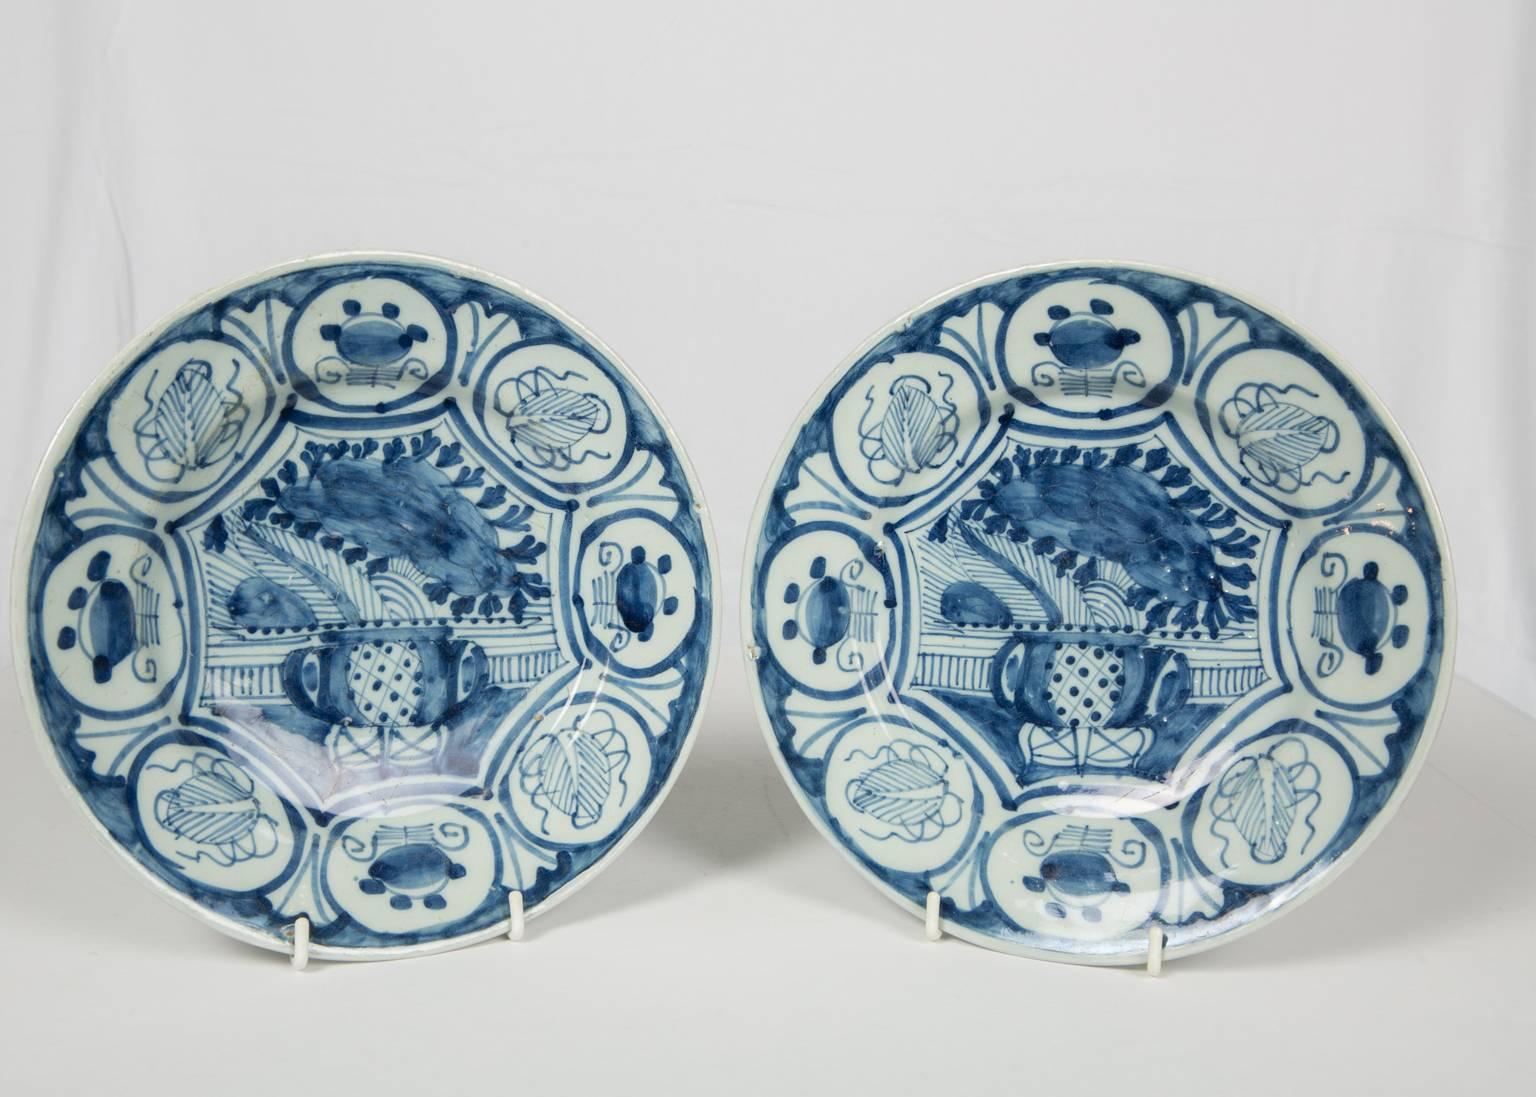 Wir freuen uns, dieses Paar blau-weißes holländisches Delft-Geschirr mit schönem Chinoiserie-Dekor anbieten zu können, das eine mit Blumen überquellende Vase zeigt. 
Um die Vase und die Blumen herum ist eine breite Bordüre mit Glückssymbolen im *Wan